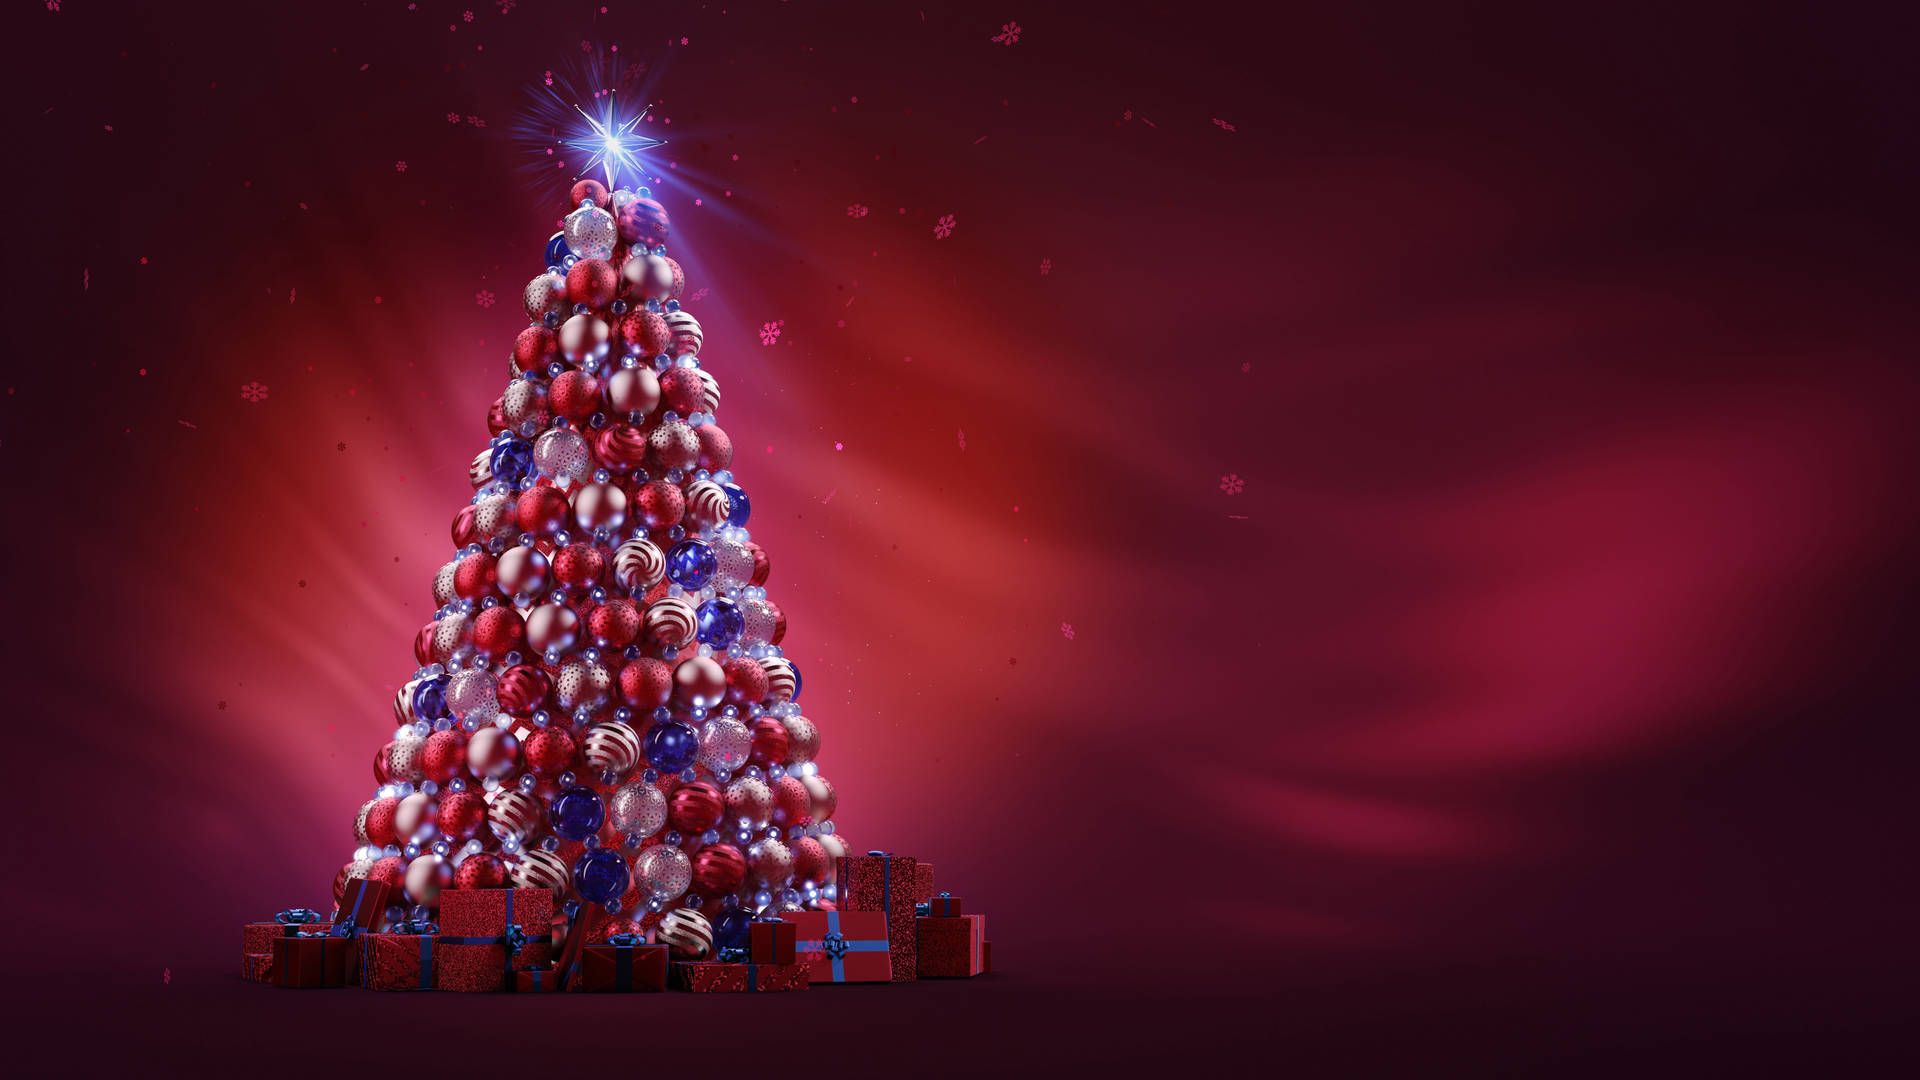 8k Christmas Tree Ball